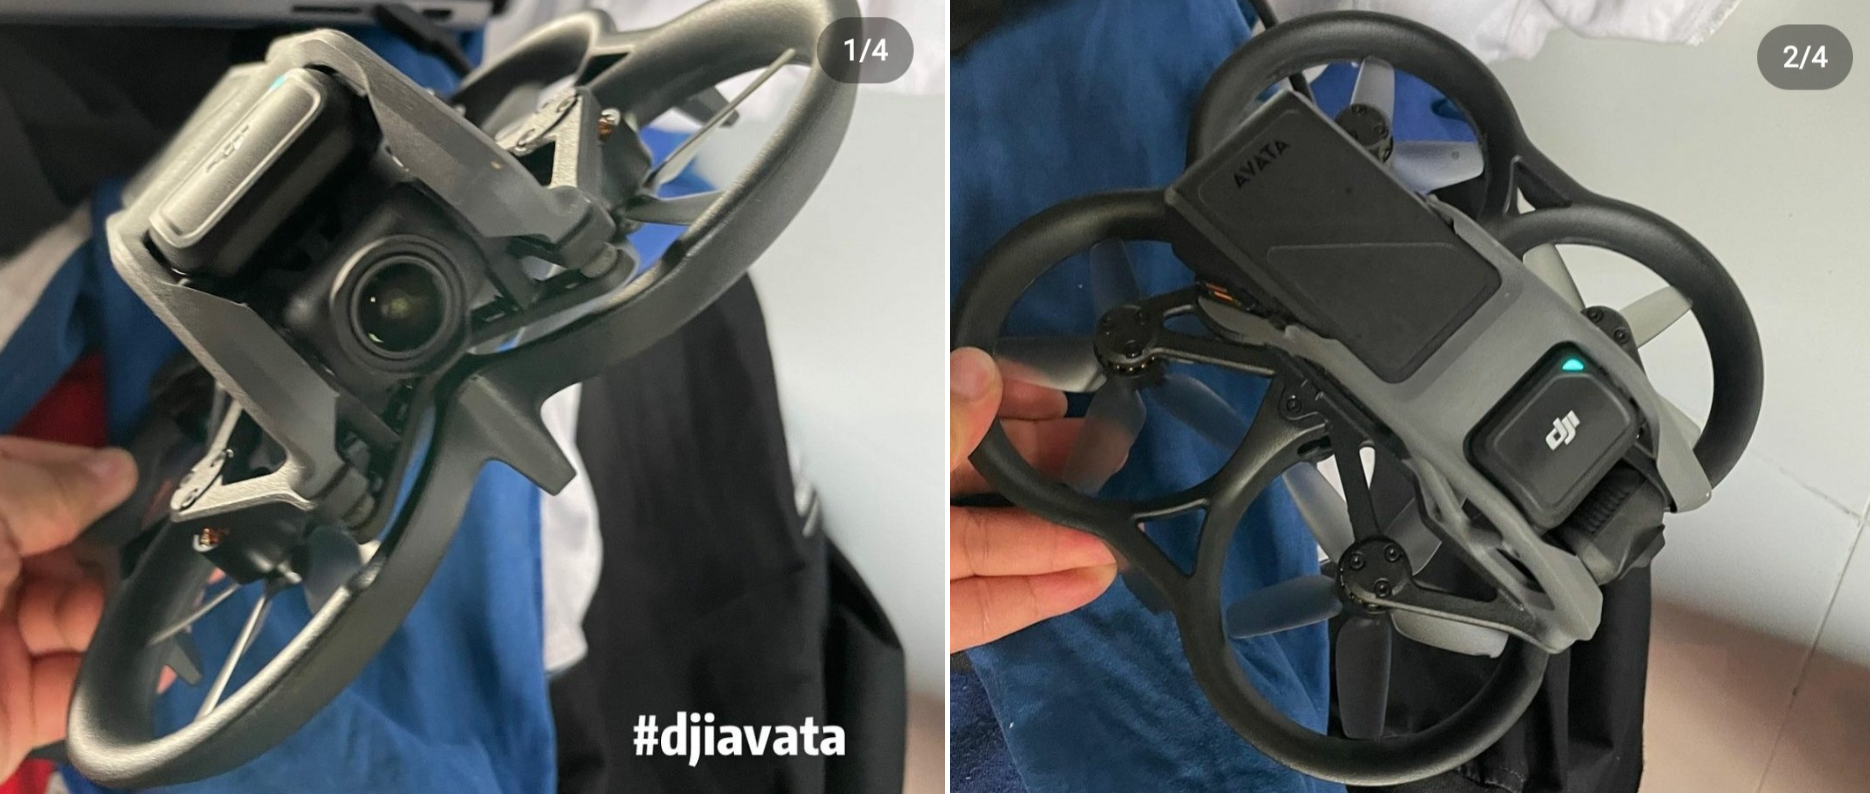 Fotos und Video der unangekündigten DJI Avata FPV-Drohne veröffentlicht